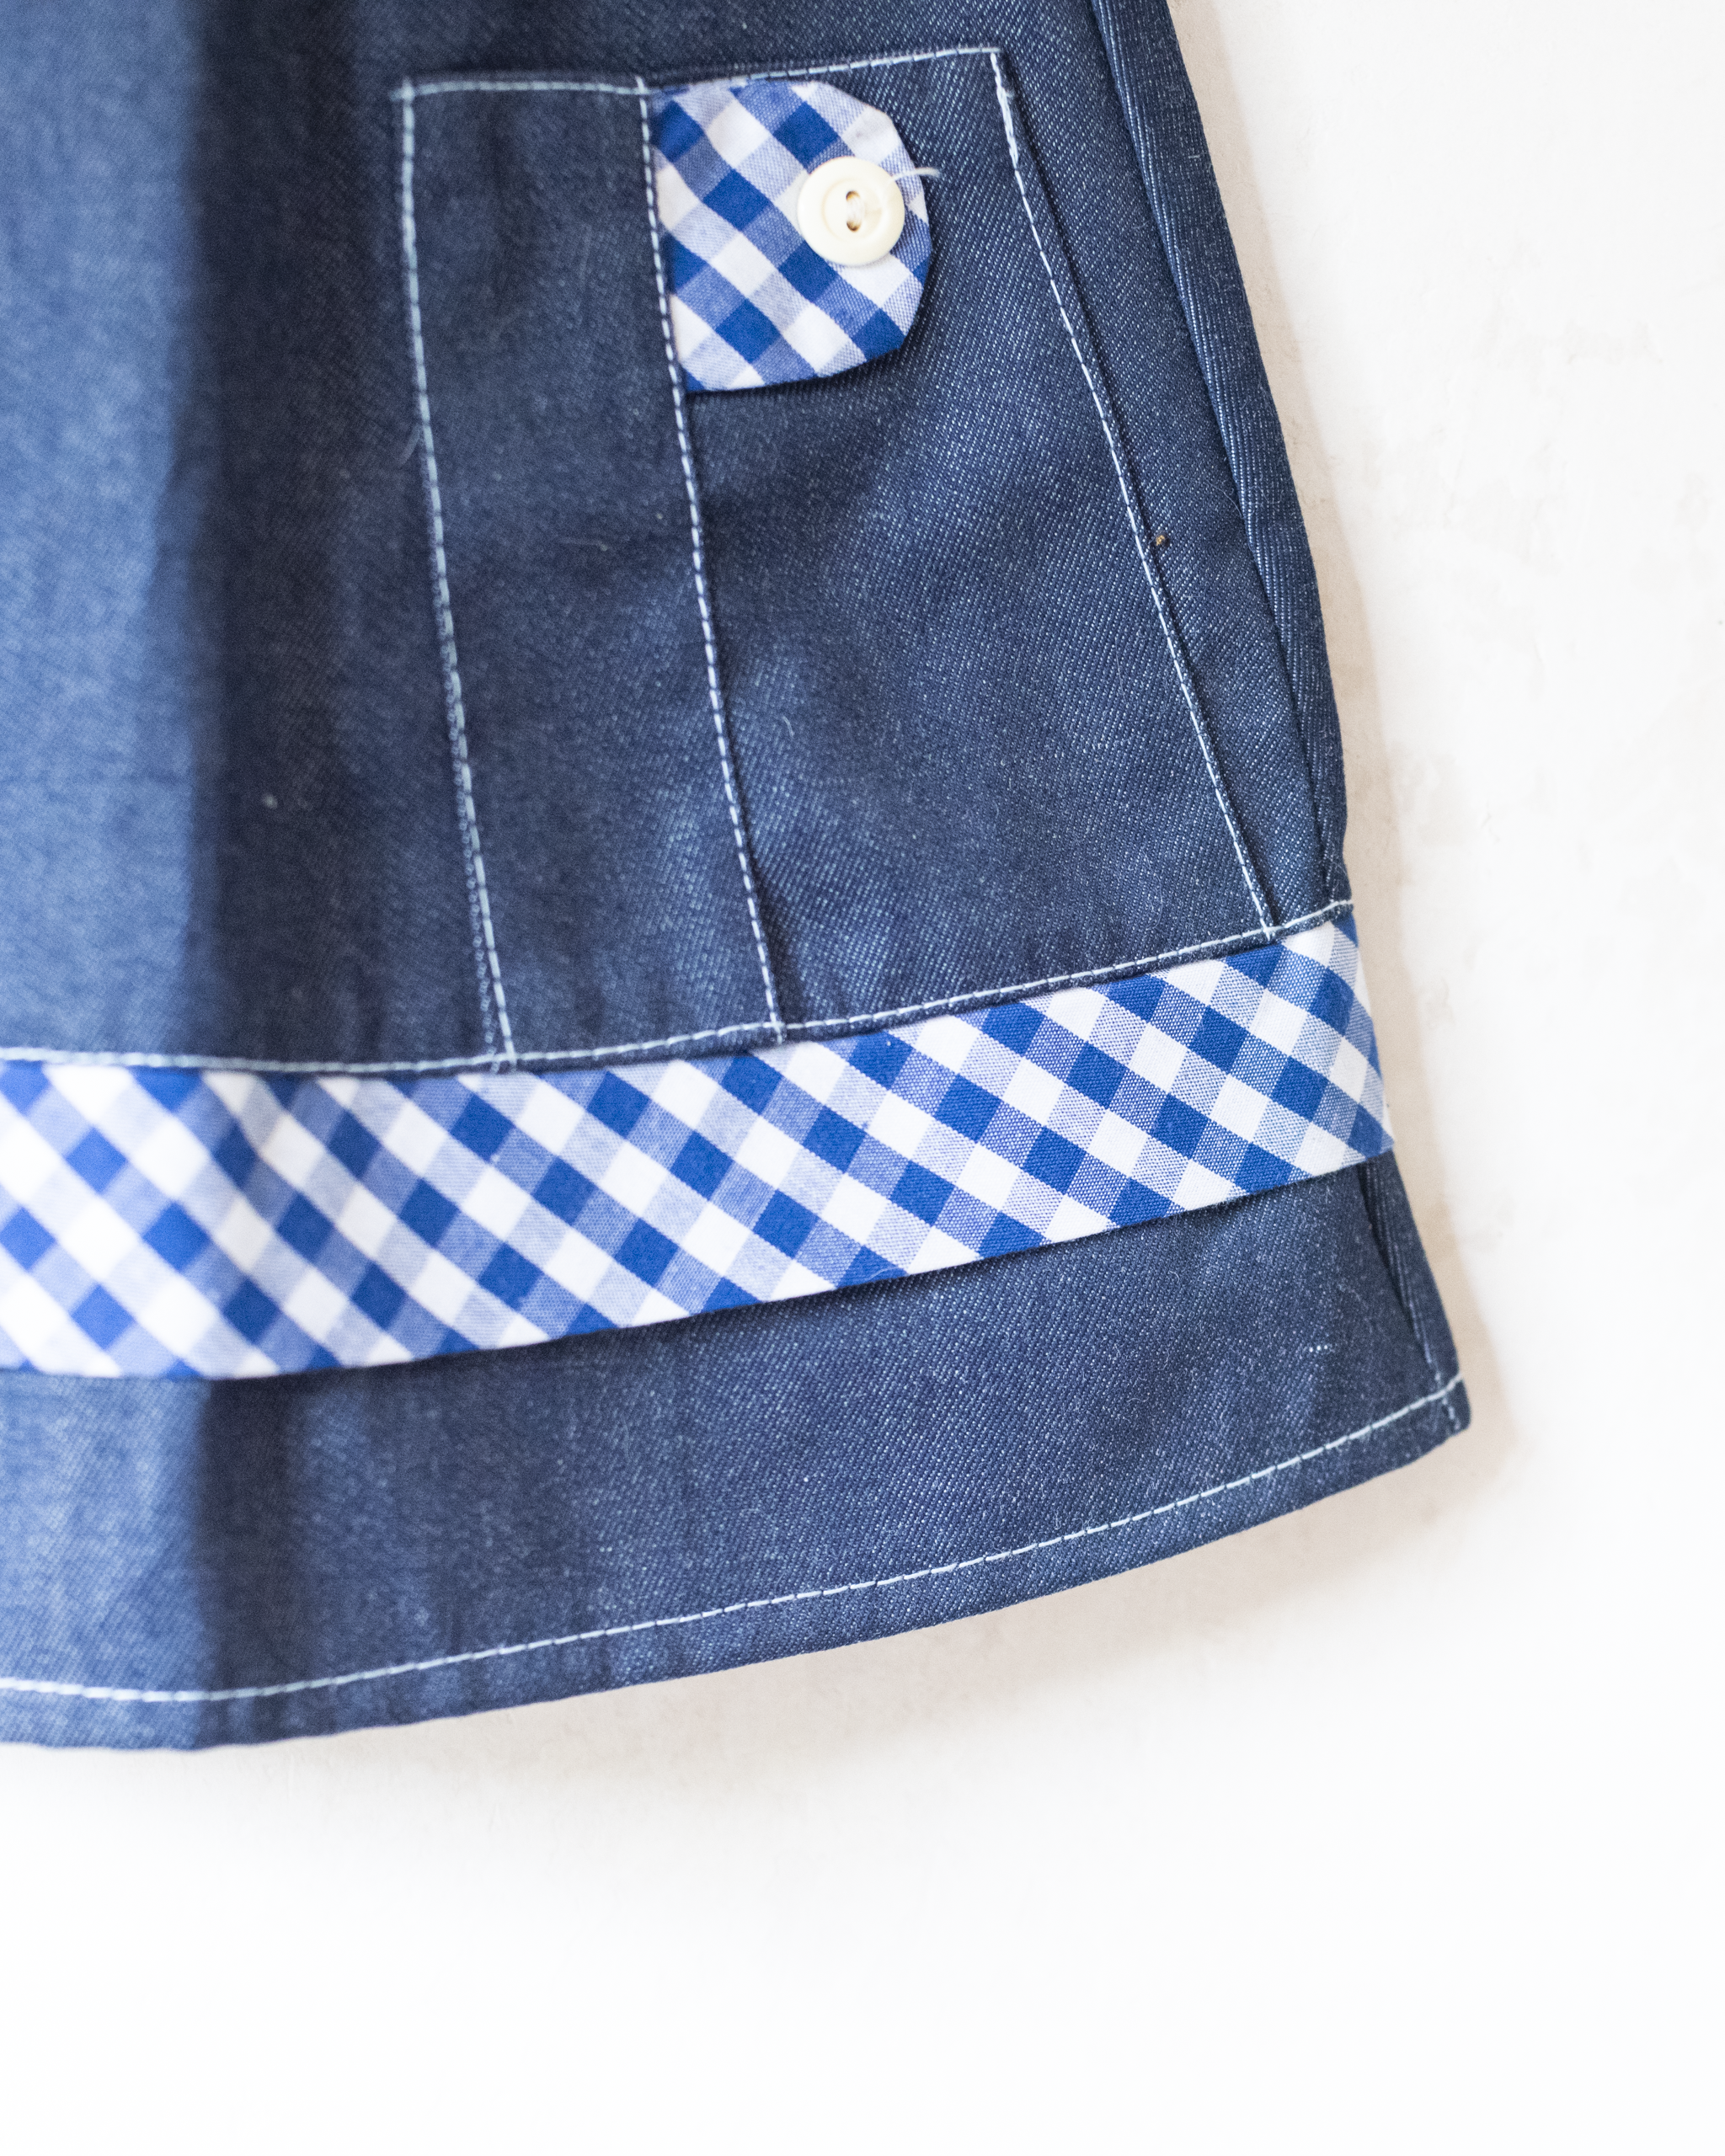 שמלת ג׳ינס עם משבצות | דד סטוק צרפתי מהסבנטיז | 2-3 שנים